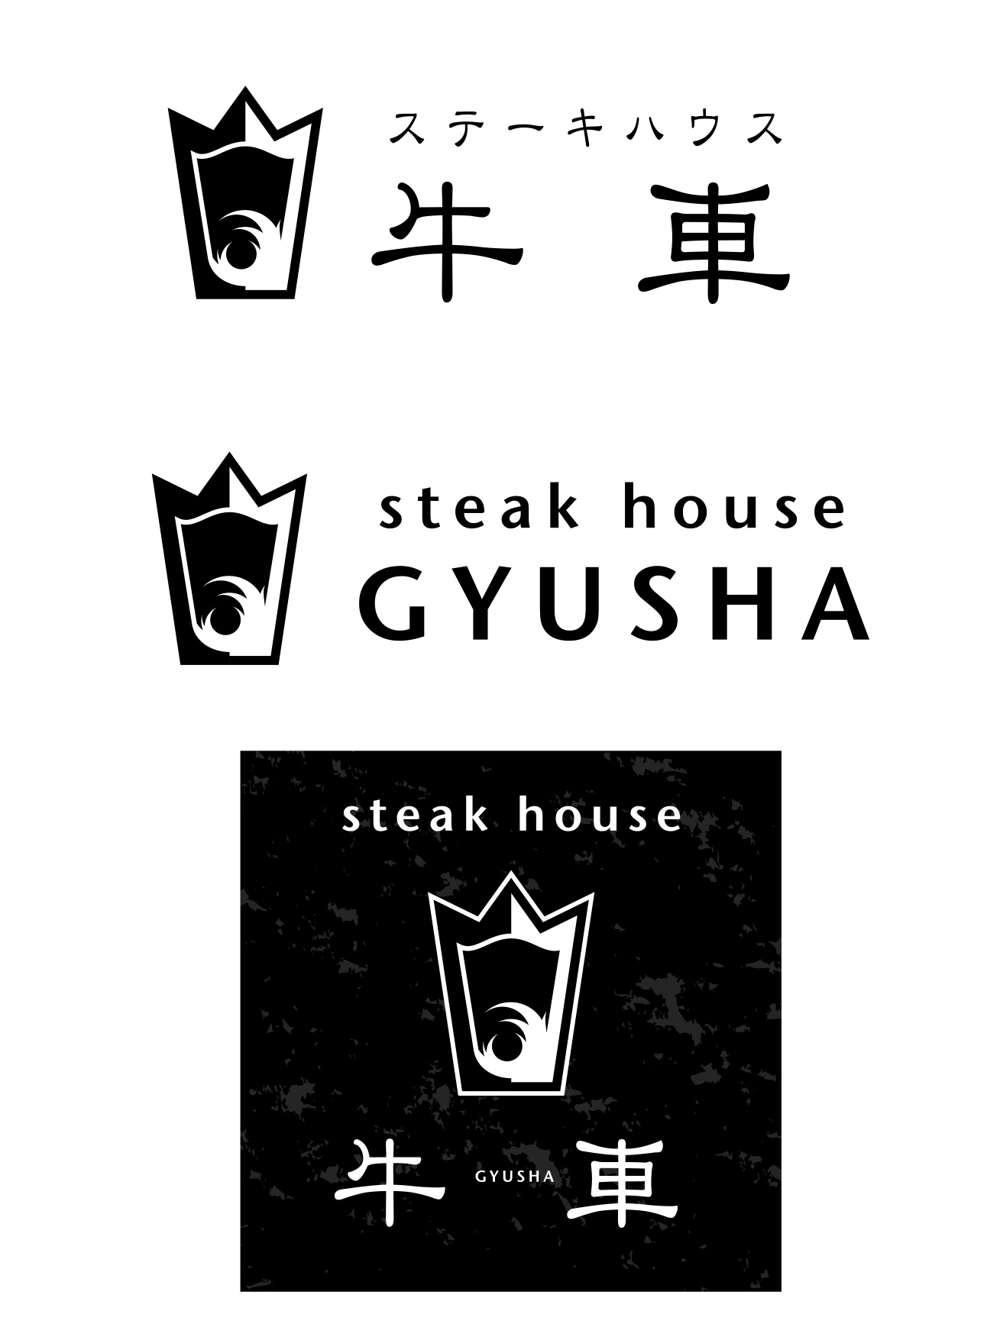 ステーキハウスのロゴ作成